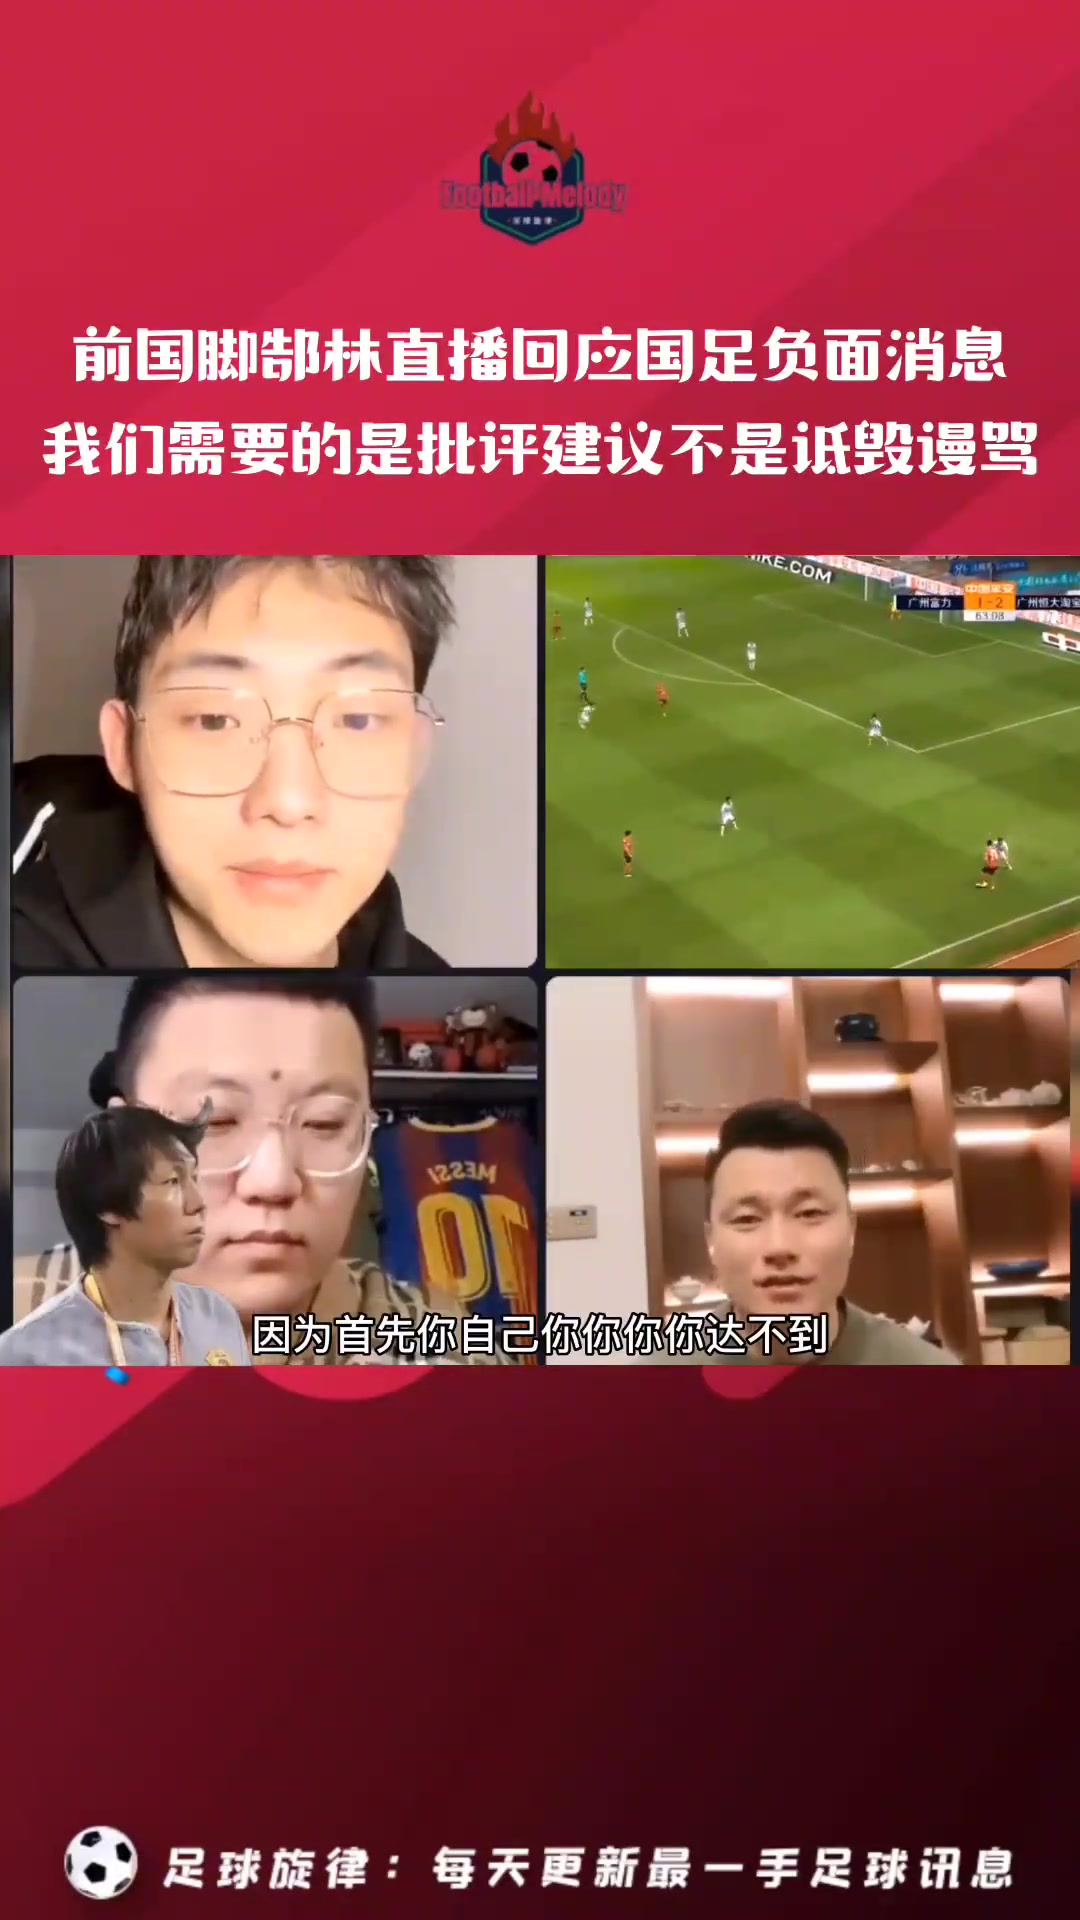 郜林:中国足球需要的是批评建议不是诋毁谩骂 足球范畴都能接受